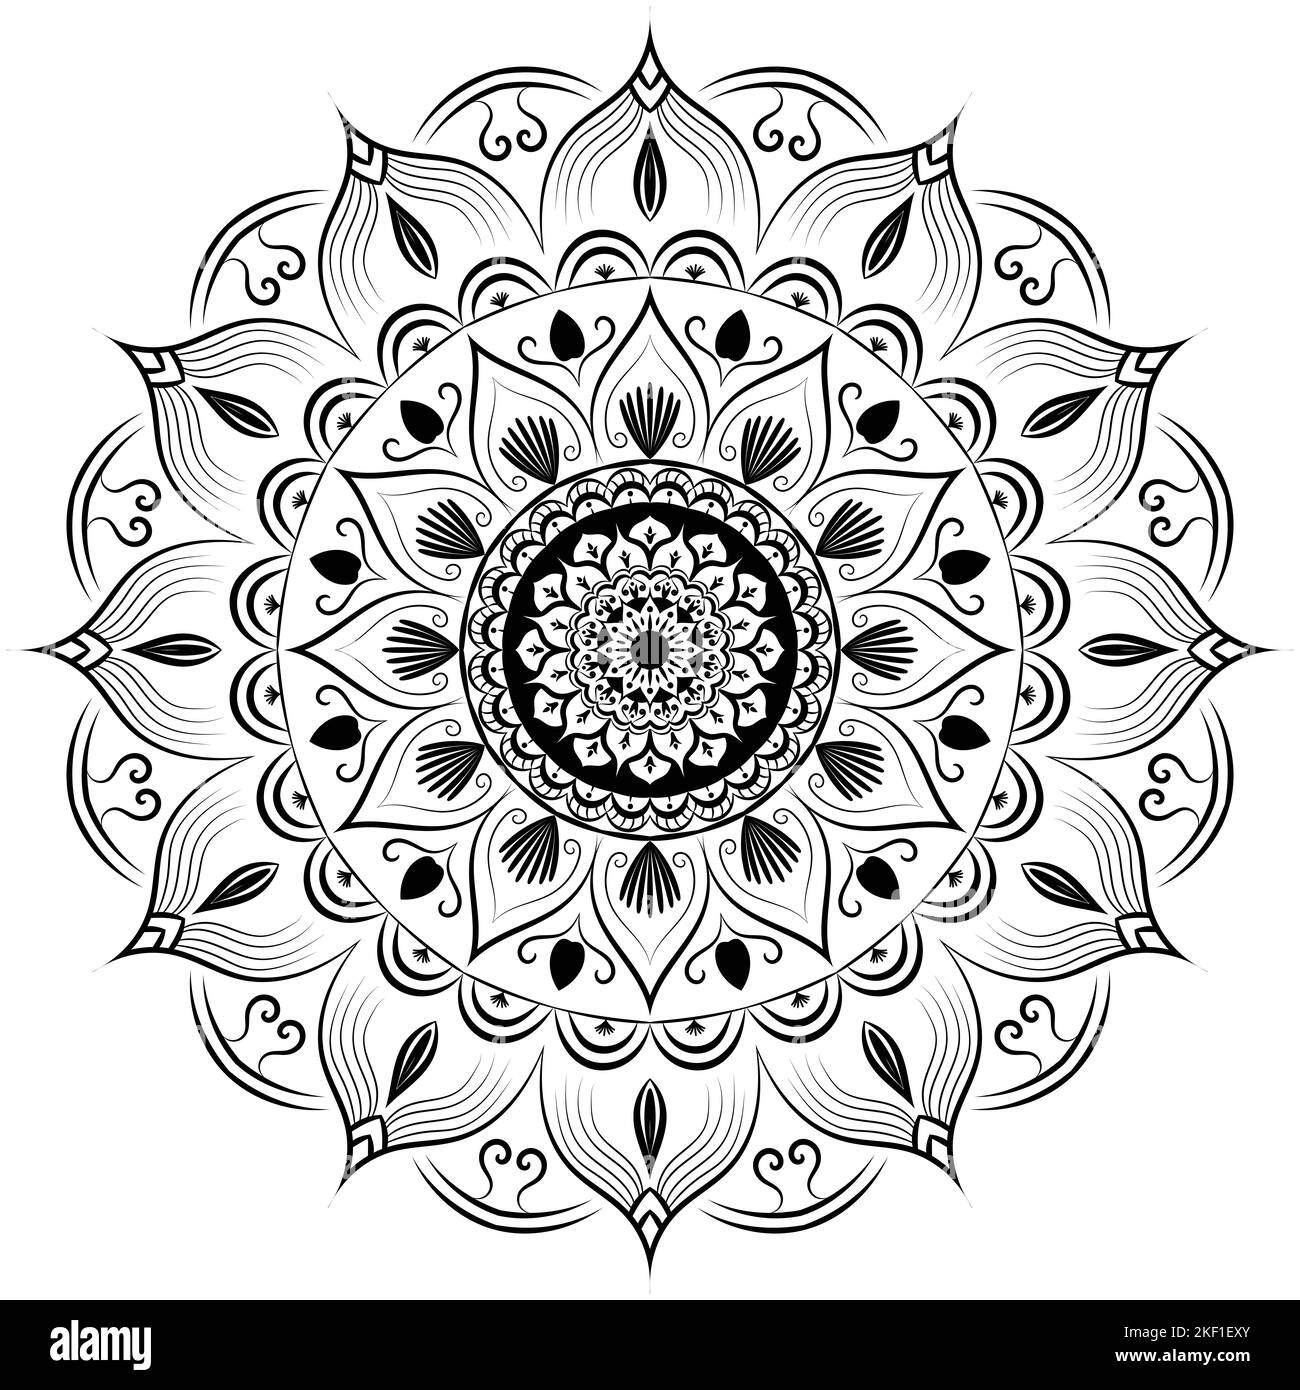 Bel motivo circolare floreale mandala arte isolata su sfondo bianco, elementi decorativi per meditazione poster o banner, hennè, tatuaggio arte, Foto Stock